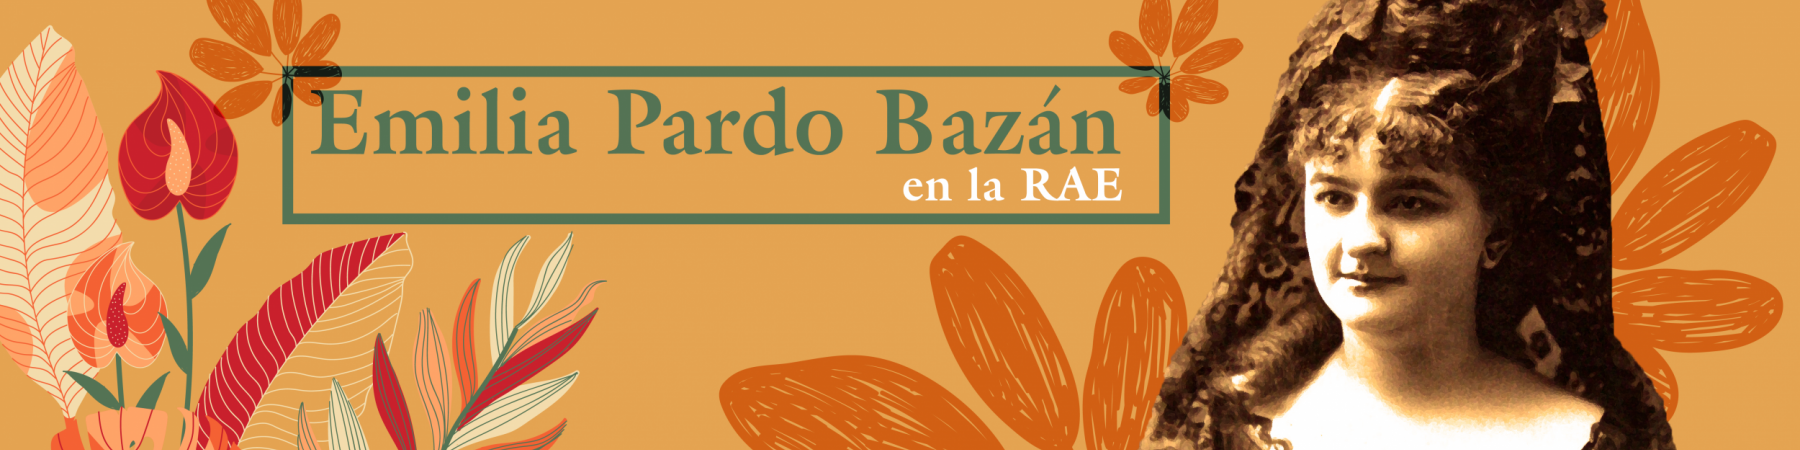 Emilio Pardo Bazán en la RAE.